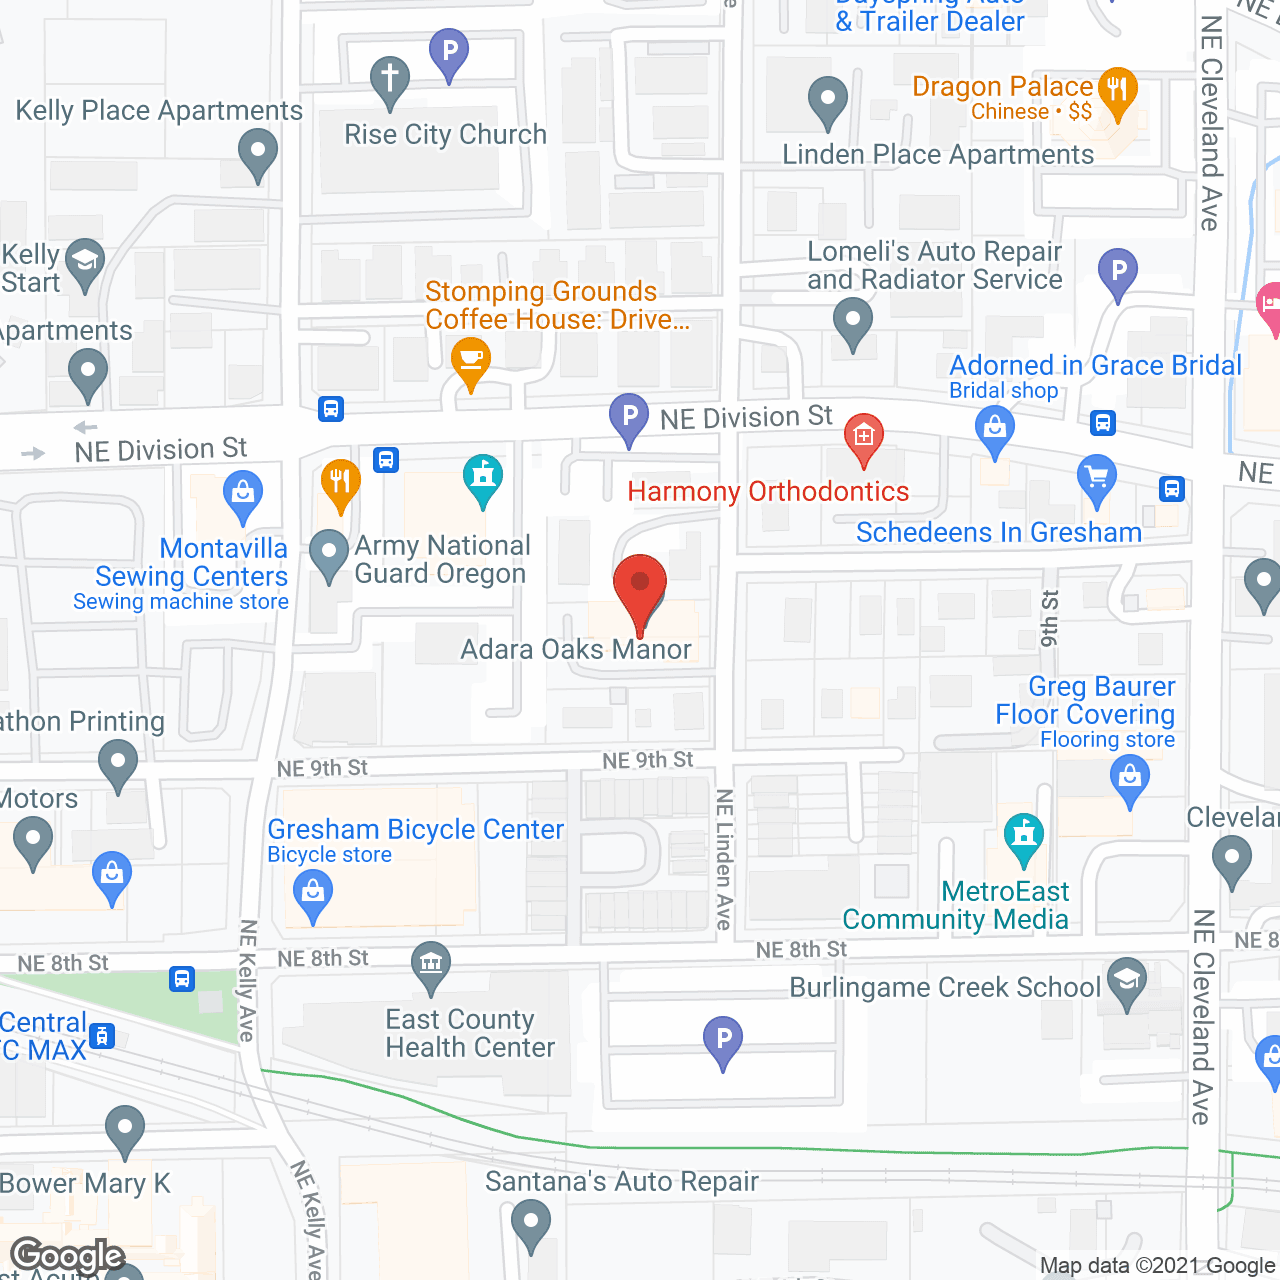 Adara Oaks Manor in google map